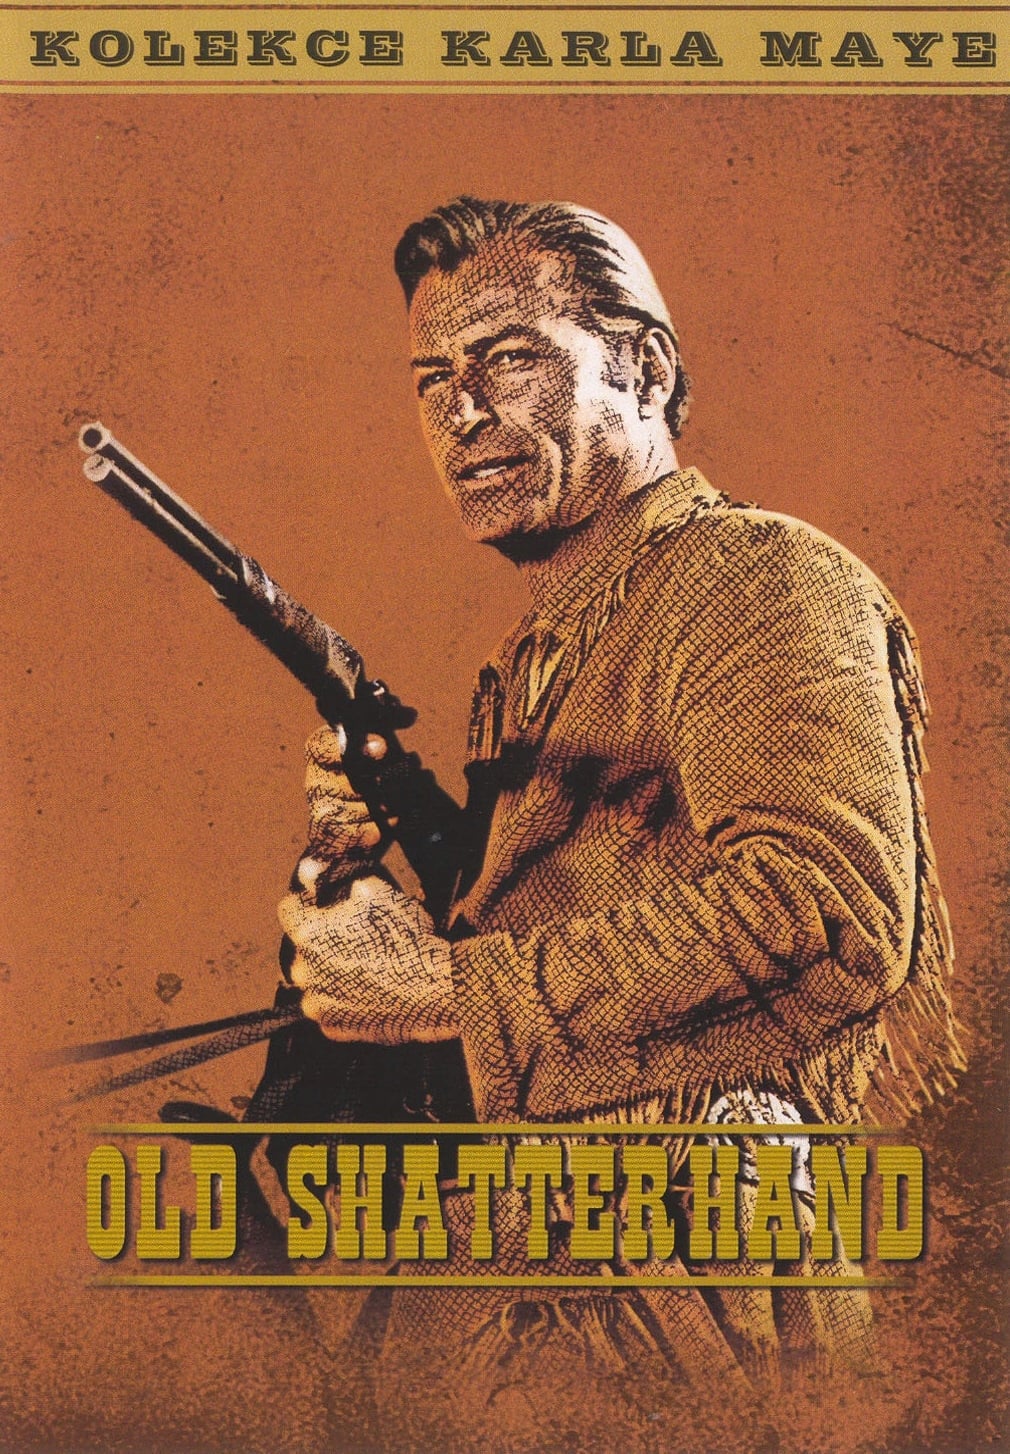 Old Shatterhand Film